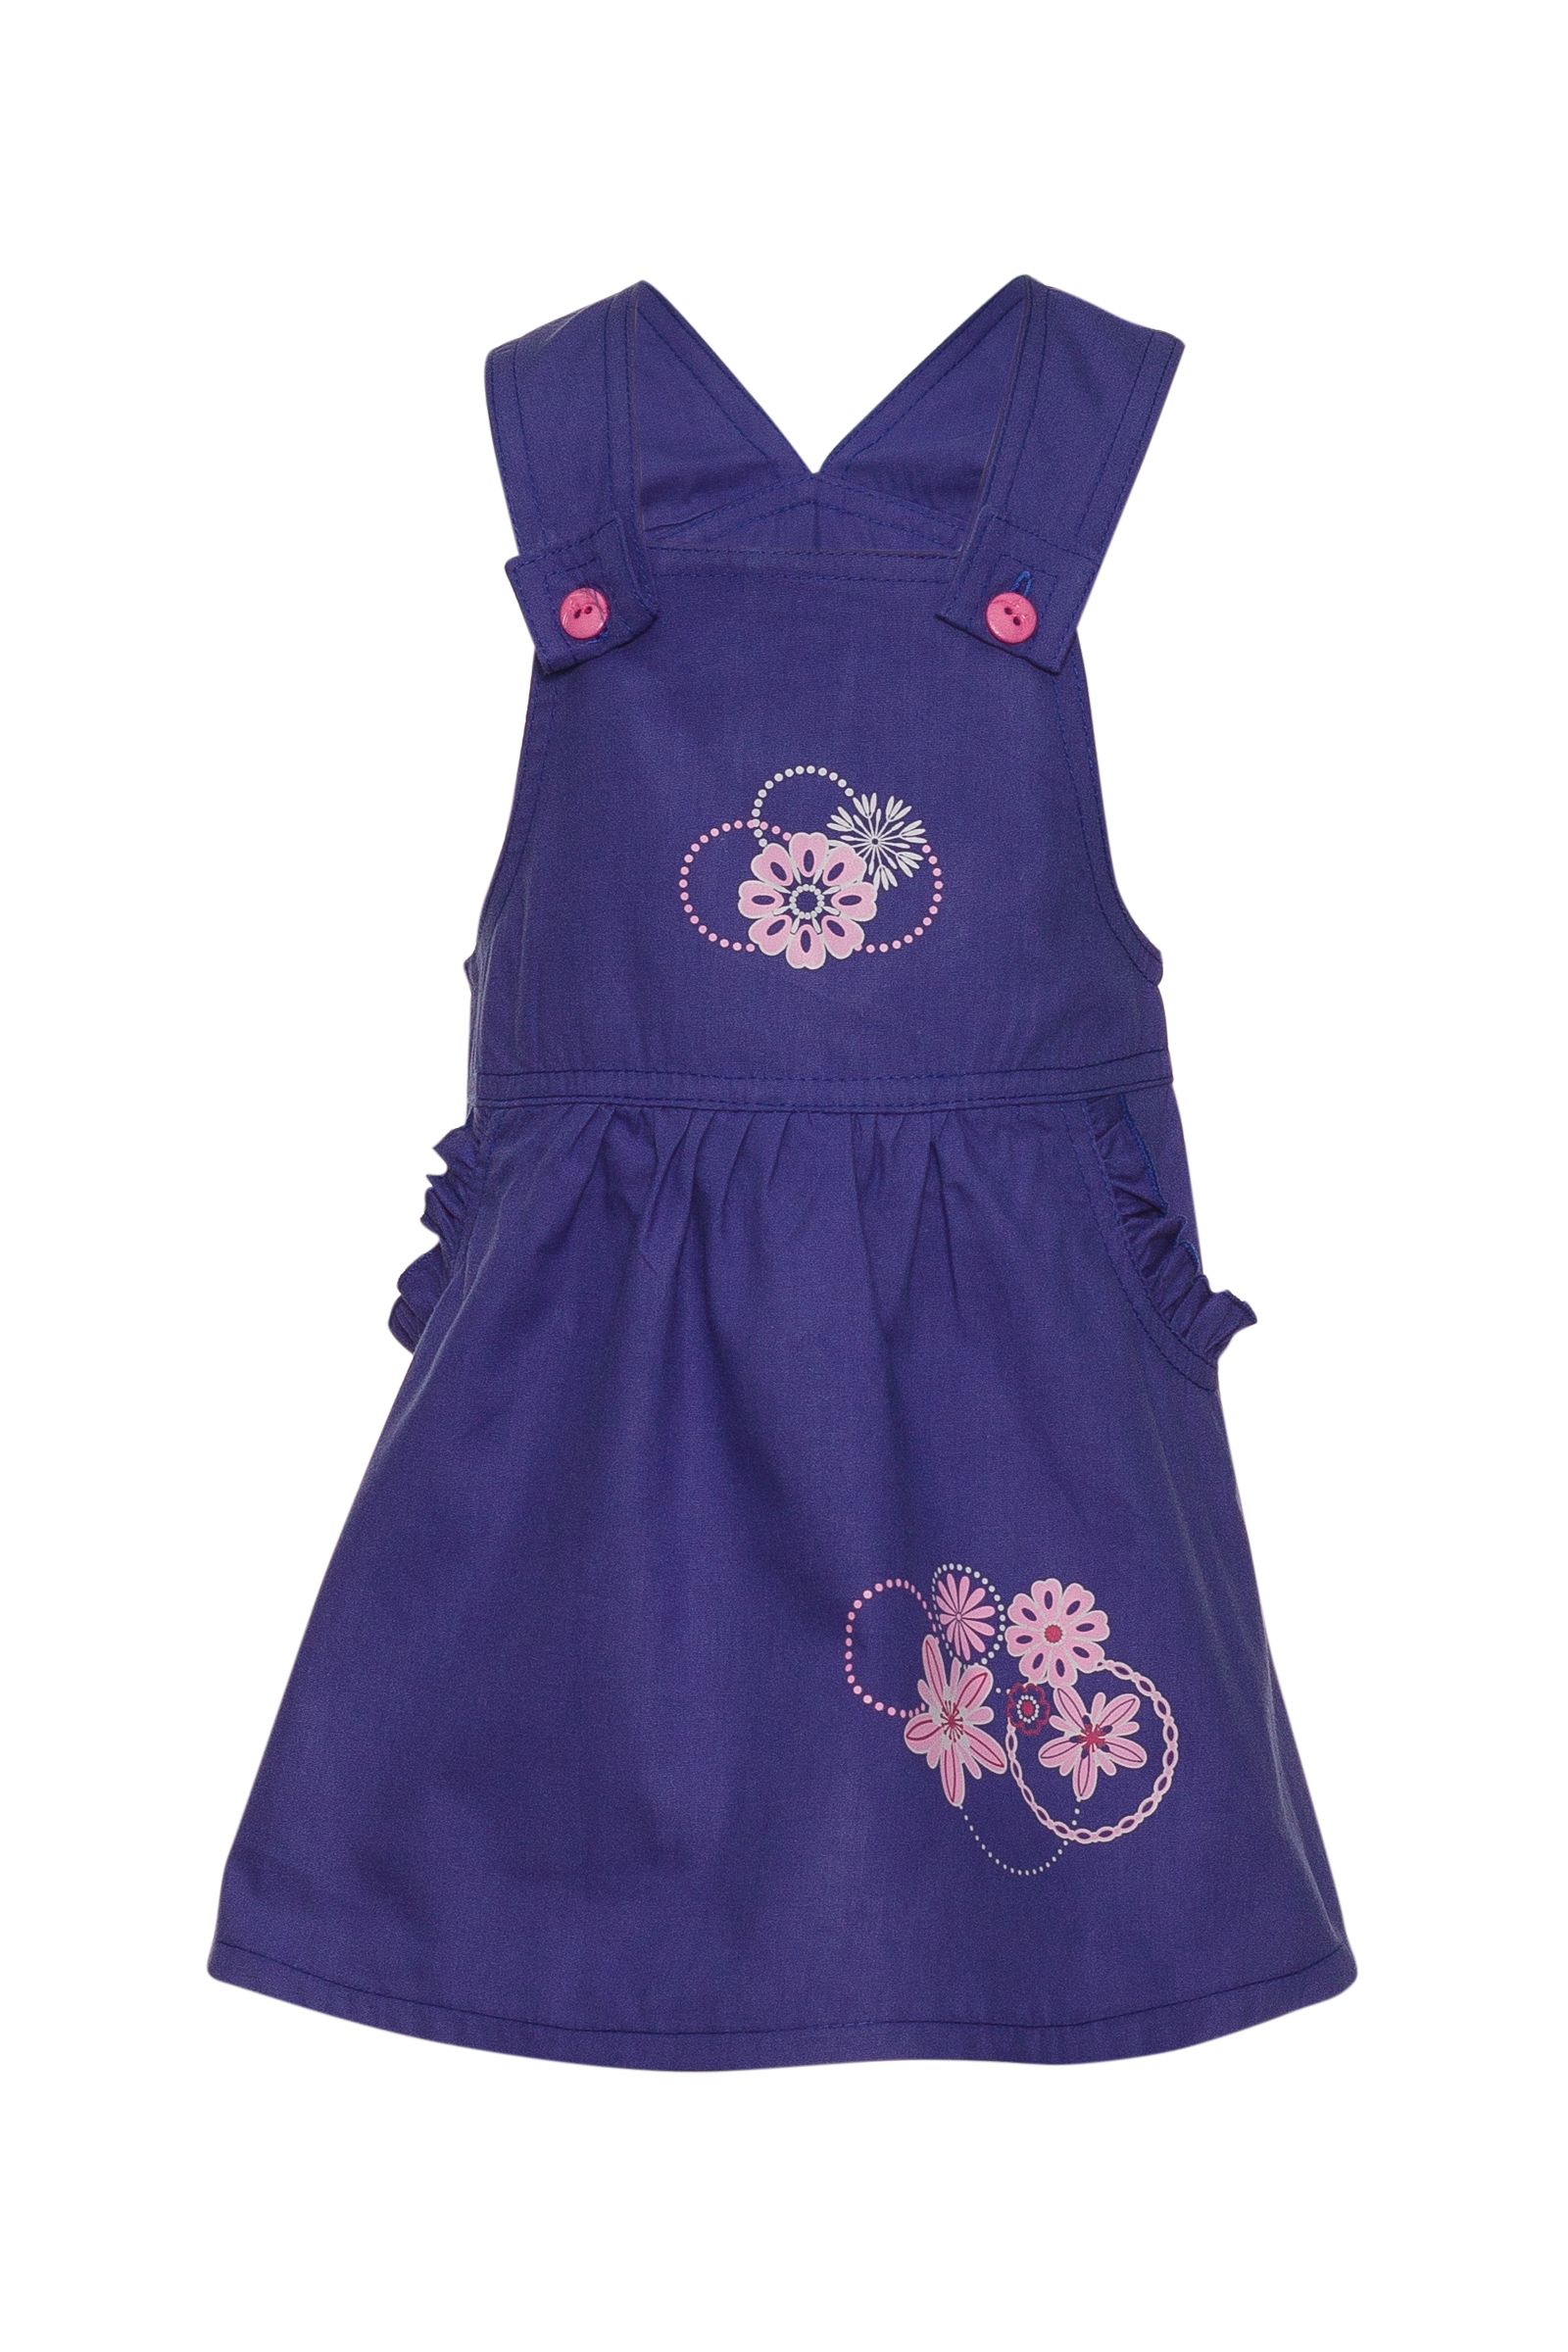 Сарафан-СФ14-2008 оптом от производителя детской одежды 'Алёна'